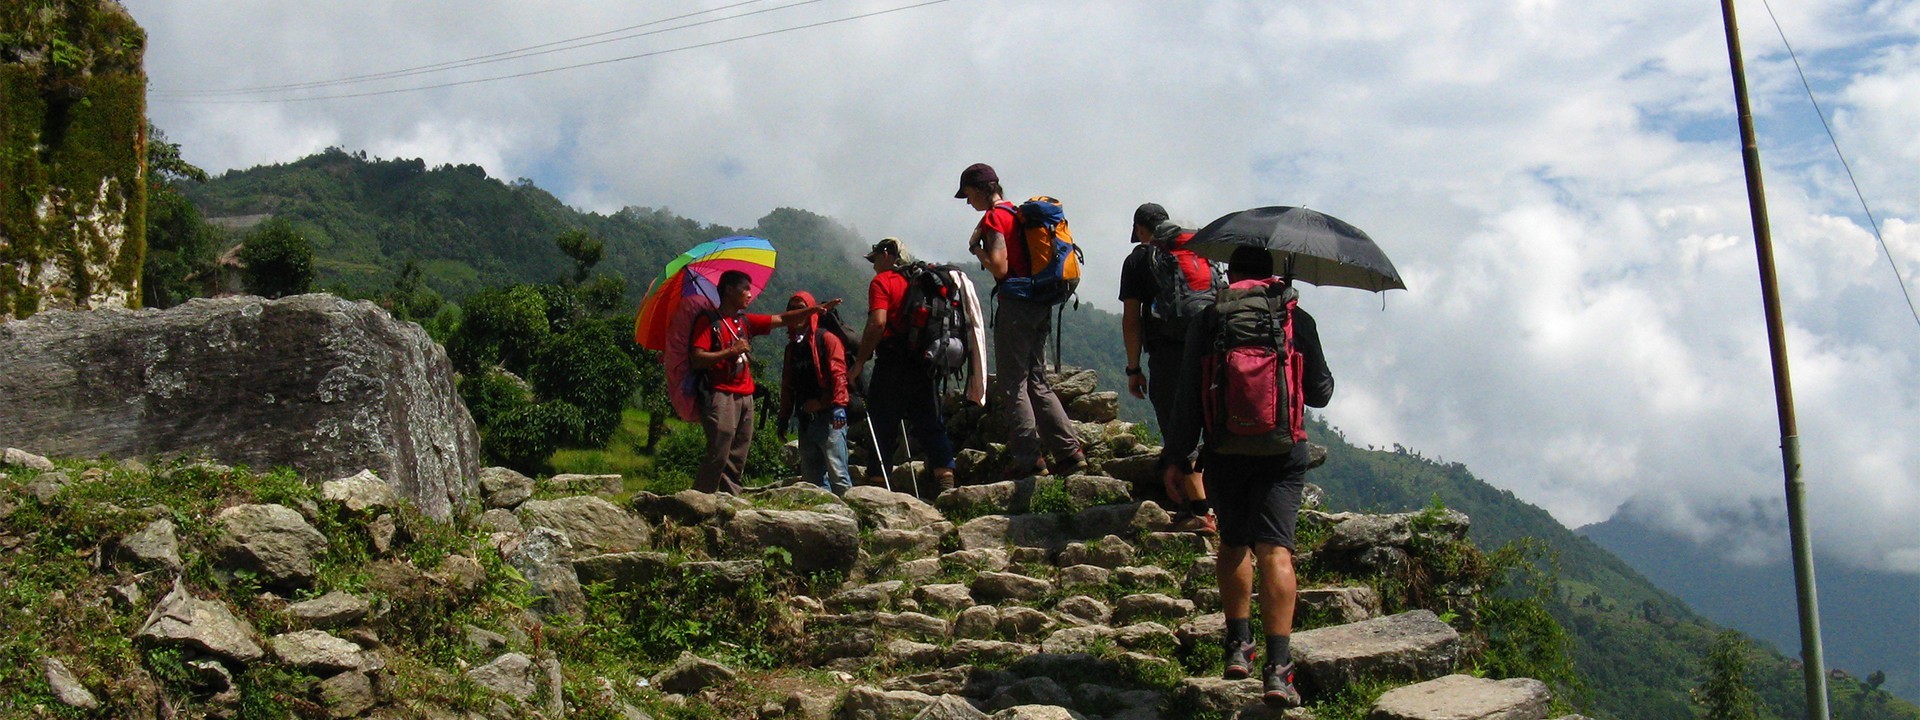 Kanchenjunga Trek | Nepal Wilderness Trekking